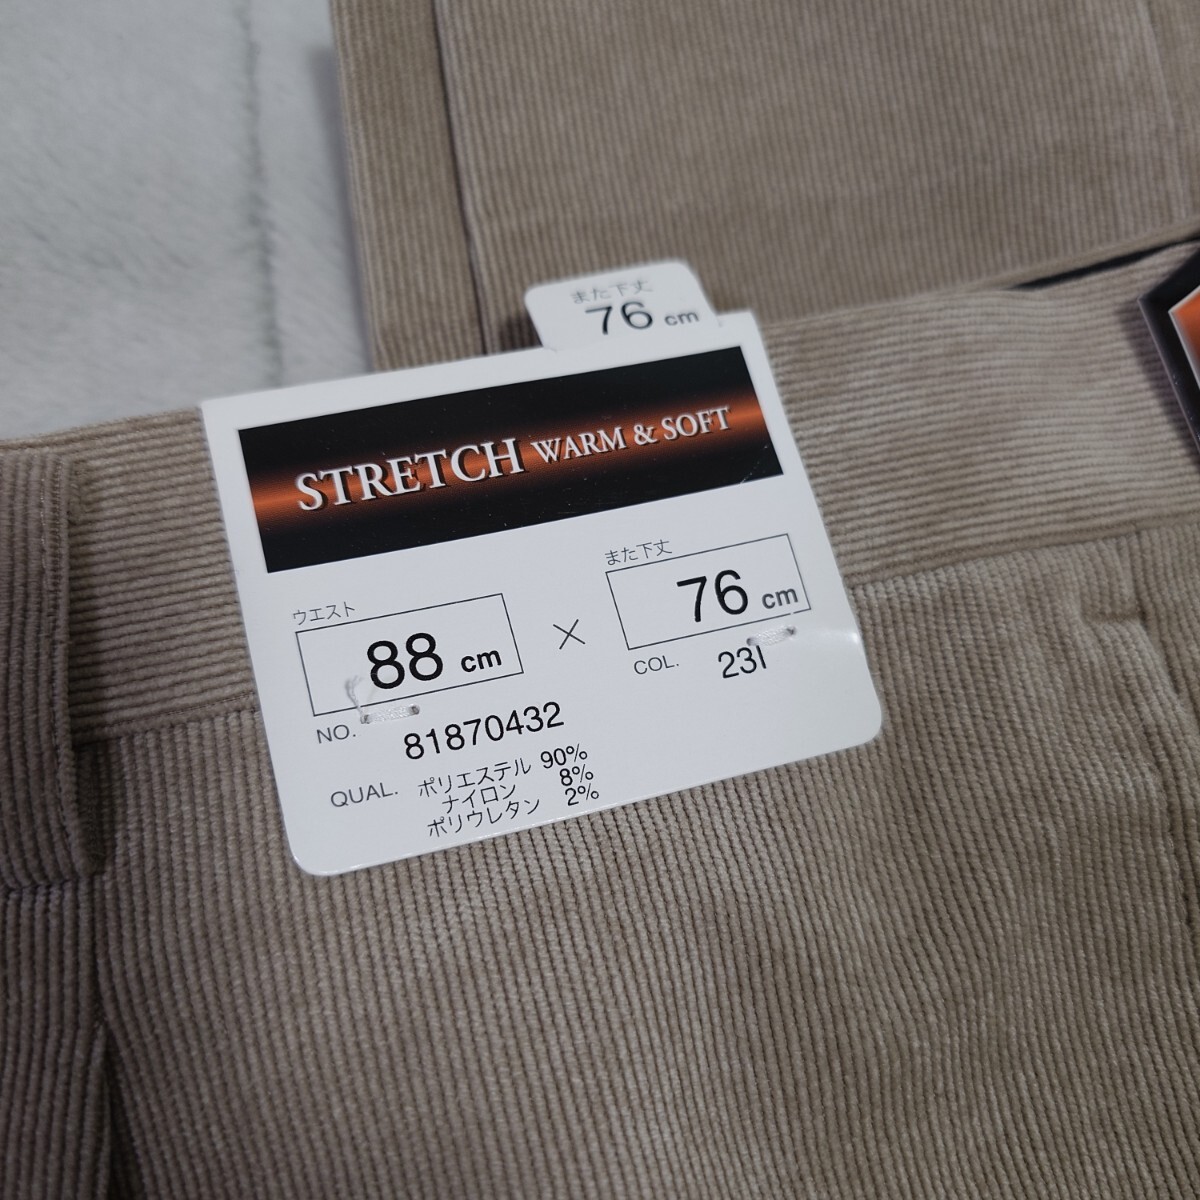  стоимость доставки 520 иен * soft &.... материалы * мужской стрейч брюки *W88 бежевый 